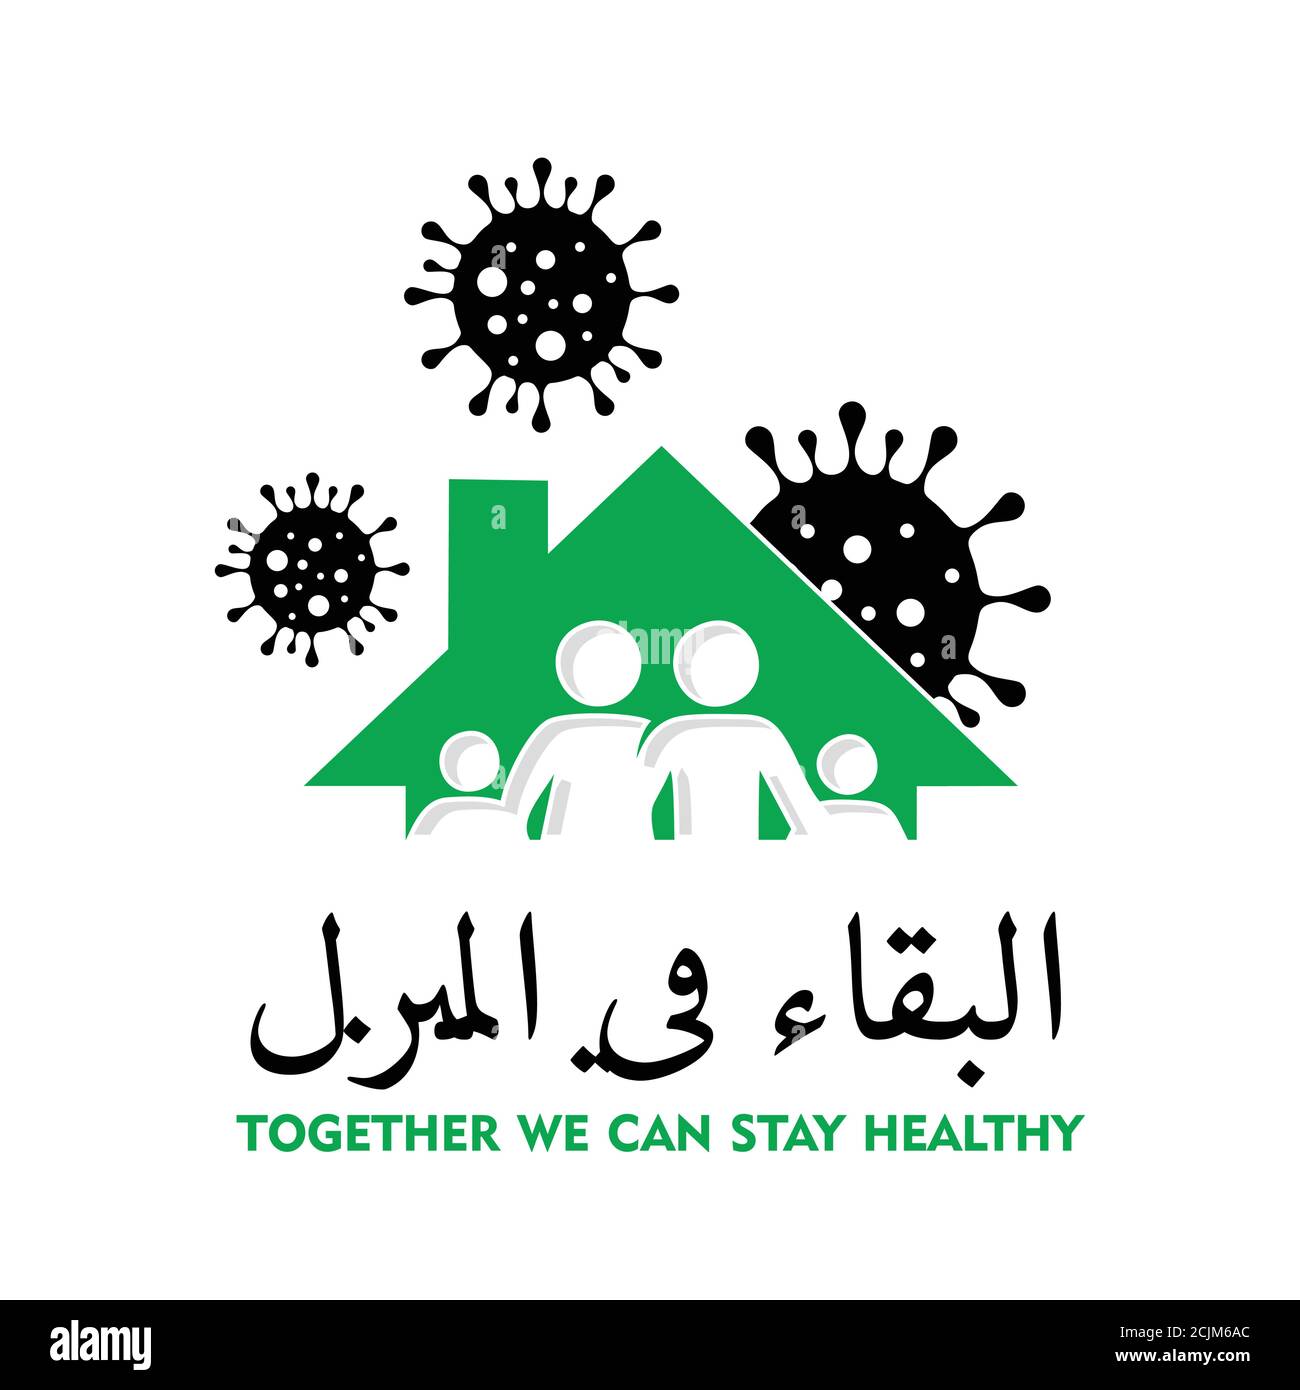 Un signe arabe pour rester à la maison aussi longtemps que possible de prévenir la propagation du germe pour rester en bonne santé en vert et noir Illustration de Vecteur